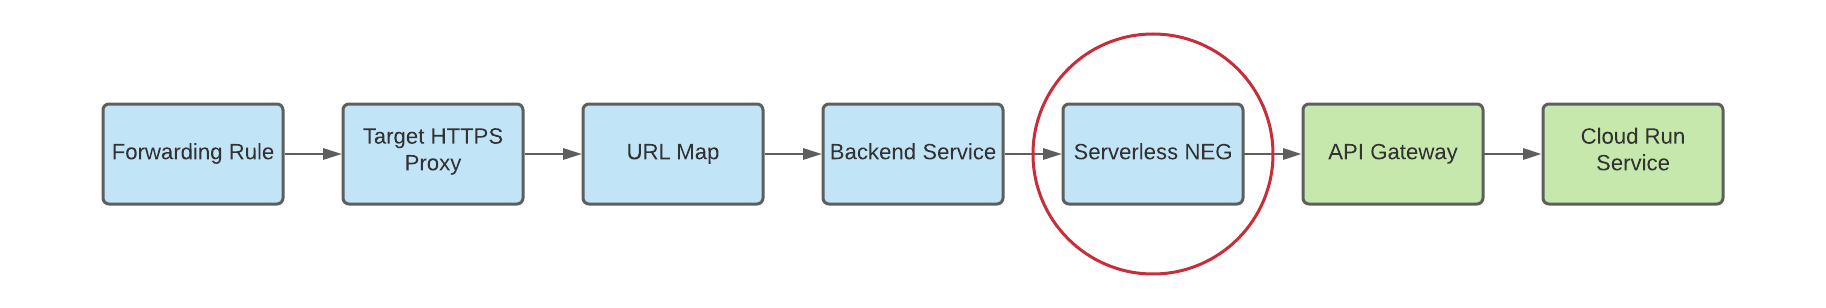 diagramma della negazione serverless come backend per i gateway multiregionali